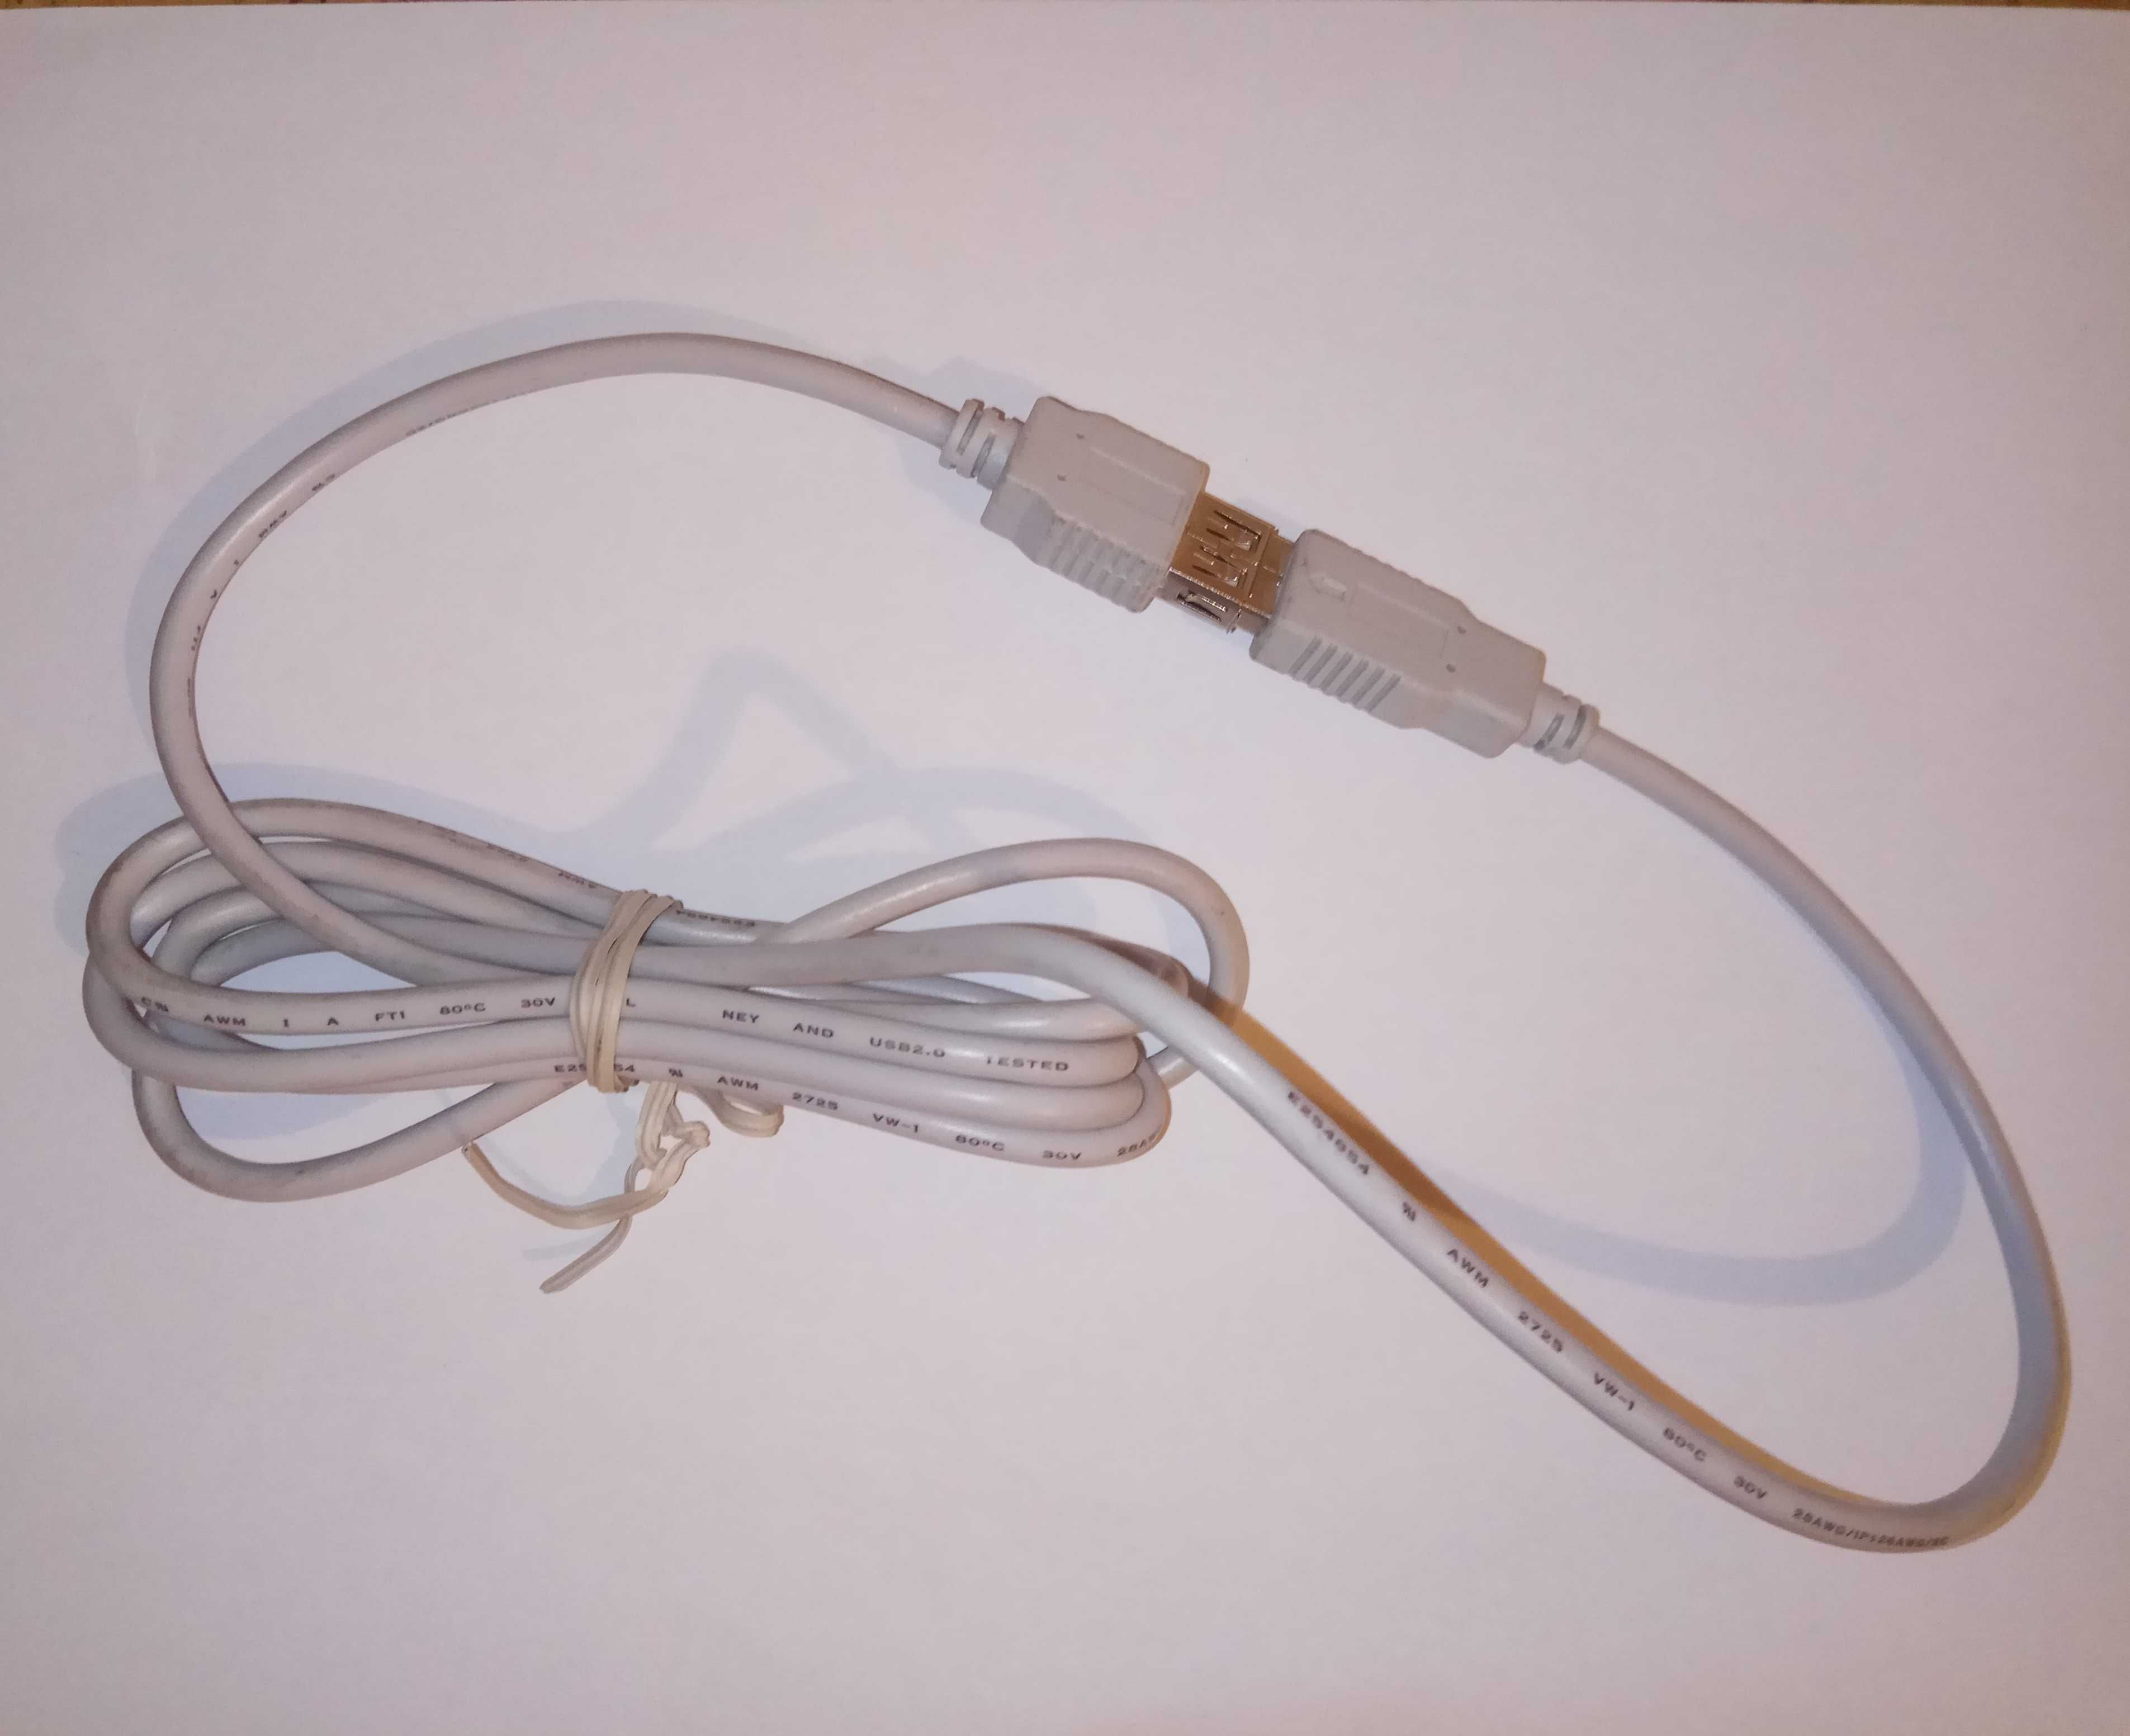 Cablu prelungitor USB A (mama) - USB A (tata), 2.0. 1.85m.